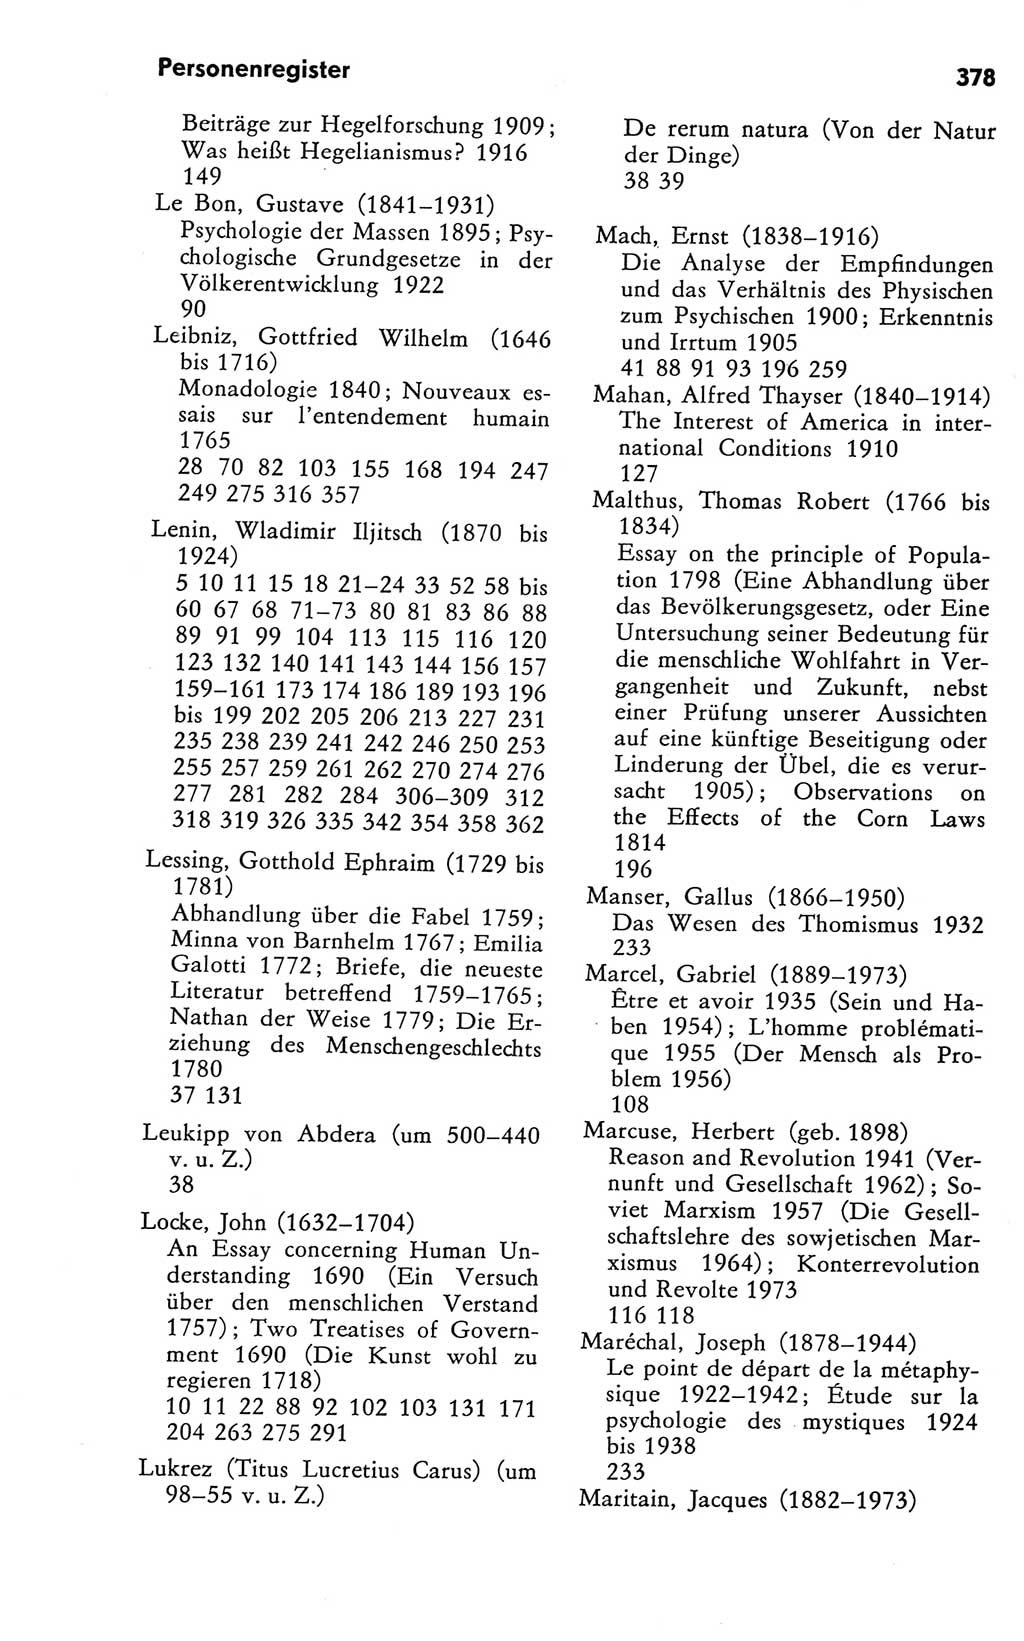 Kleines Wörterbuch der marxistisch-leninistischen Philosophie [Deutsche Demokratische Republik (DDR)] 1981, Seite 378 (Kl. Wb. ML Phil. DDR 1981, S. 378)